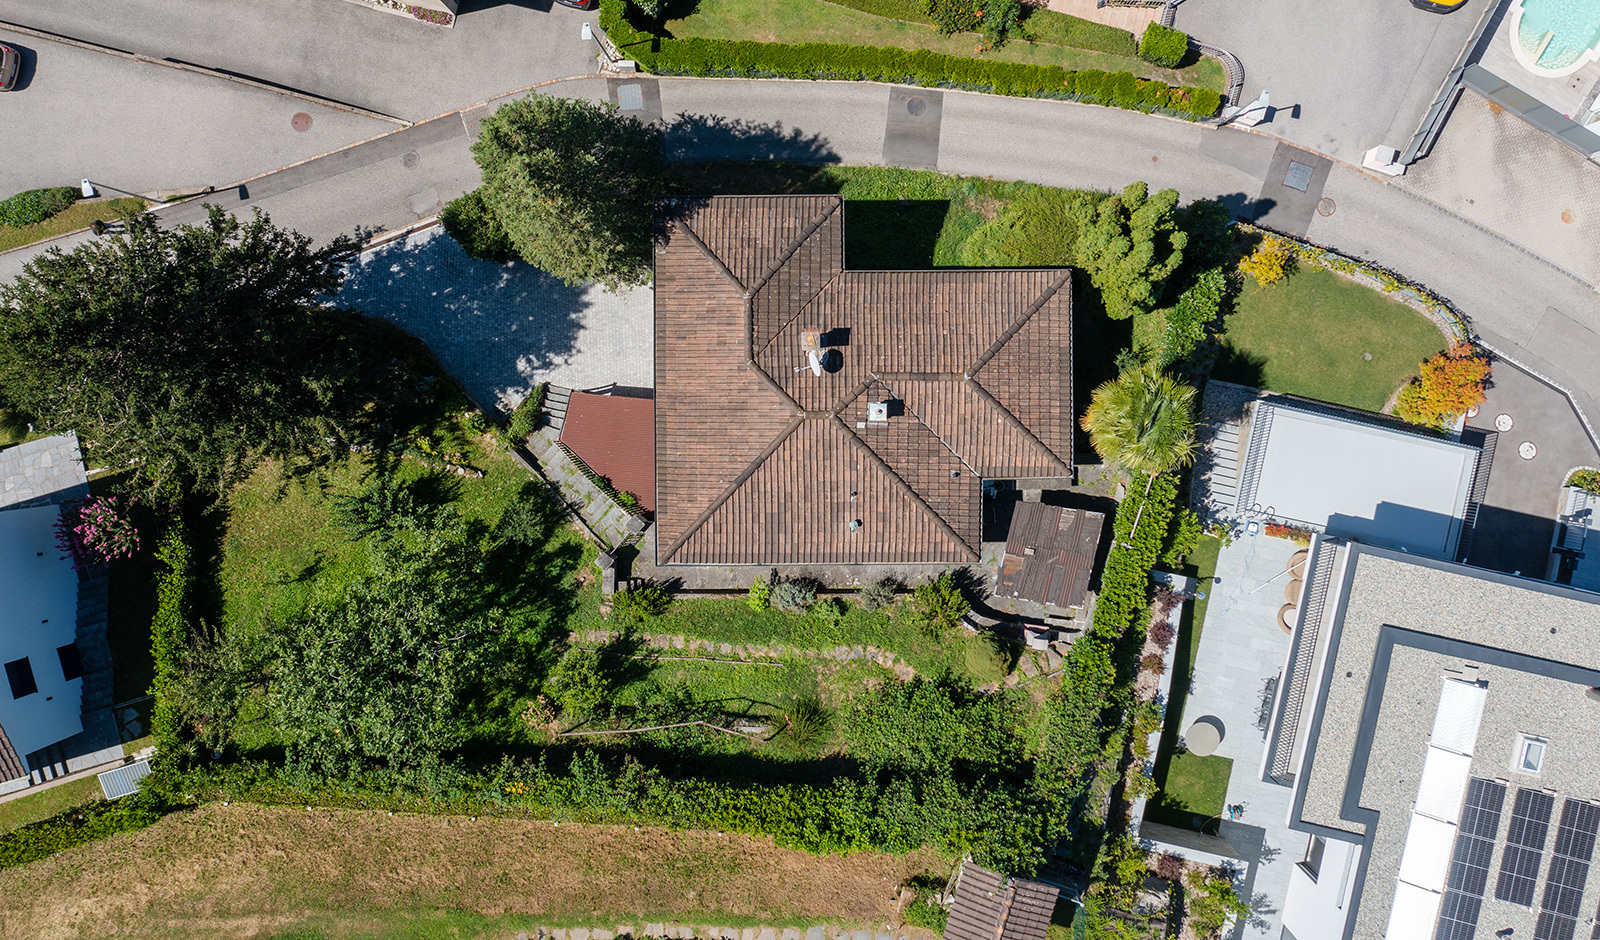 Vezia / Lugano – Ferienhaus mit herrlicher Weitsicht